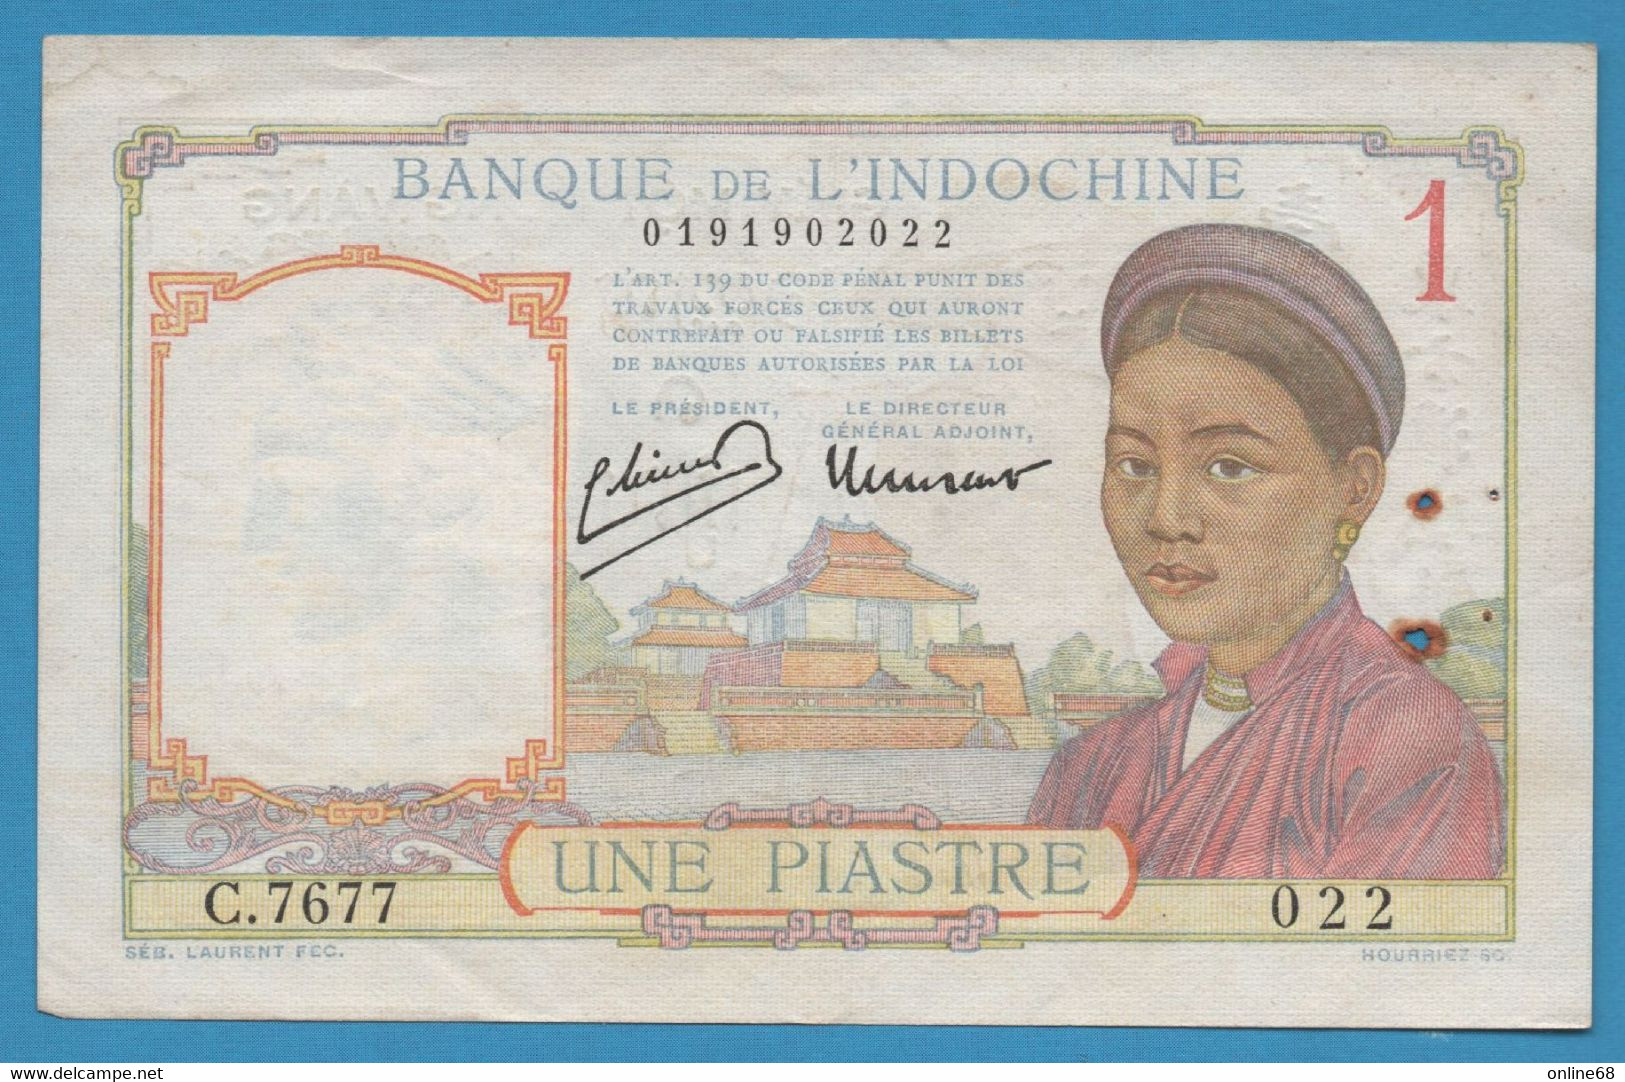 INDOCHINE 1 PIASTRE ND (1932-1949) # C.7677 022 P# 54c Signatures: Minost & Laurent - Indochine